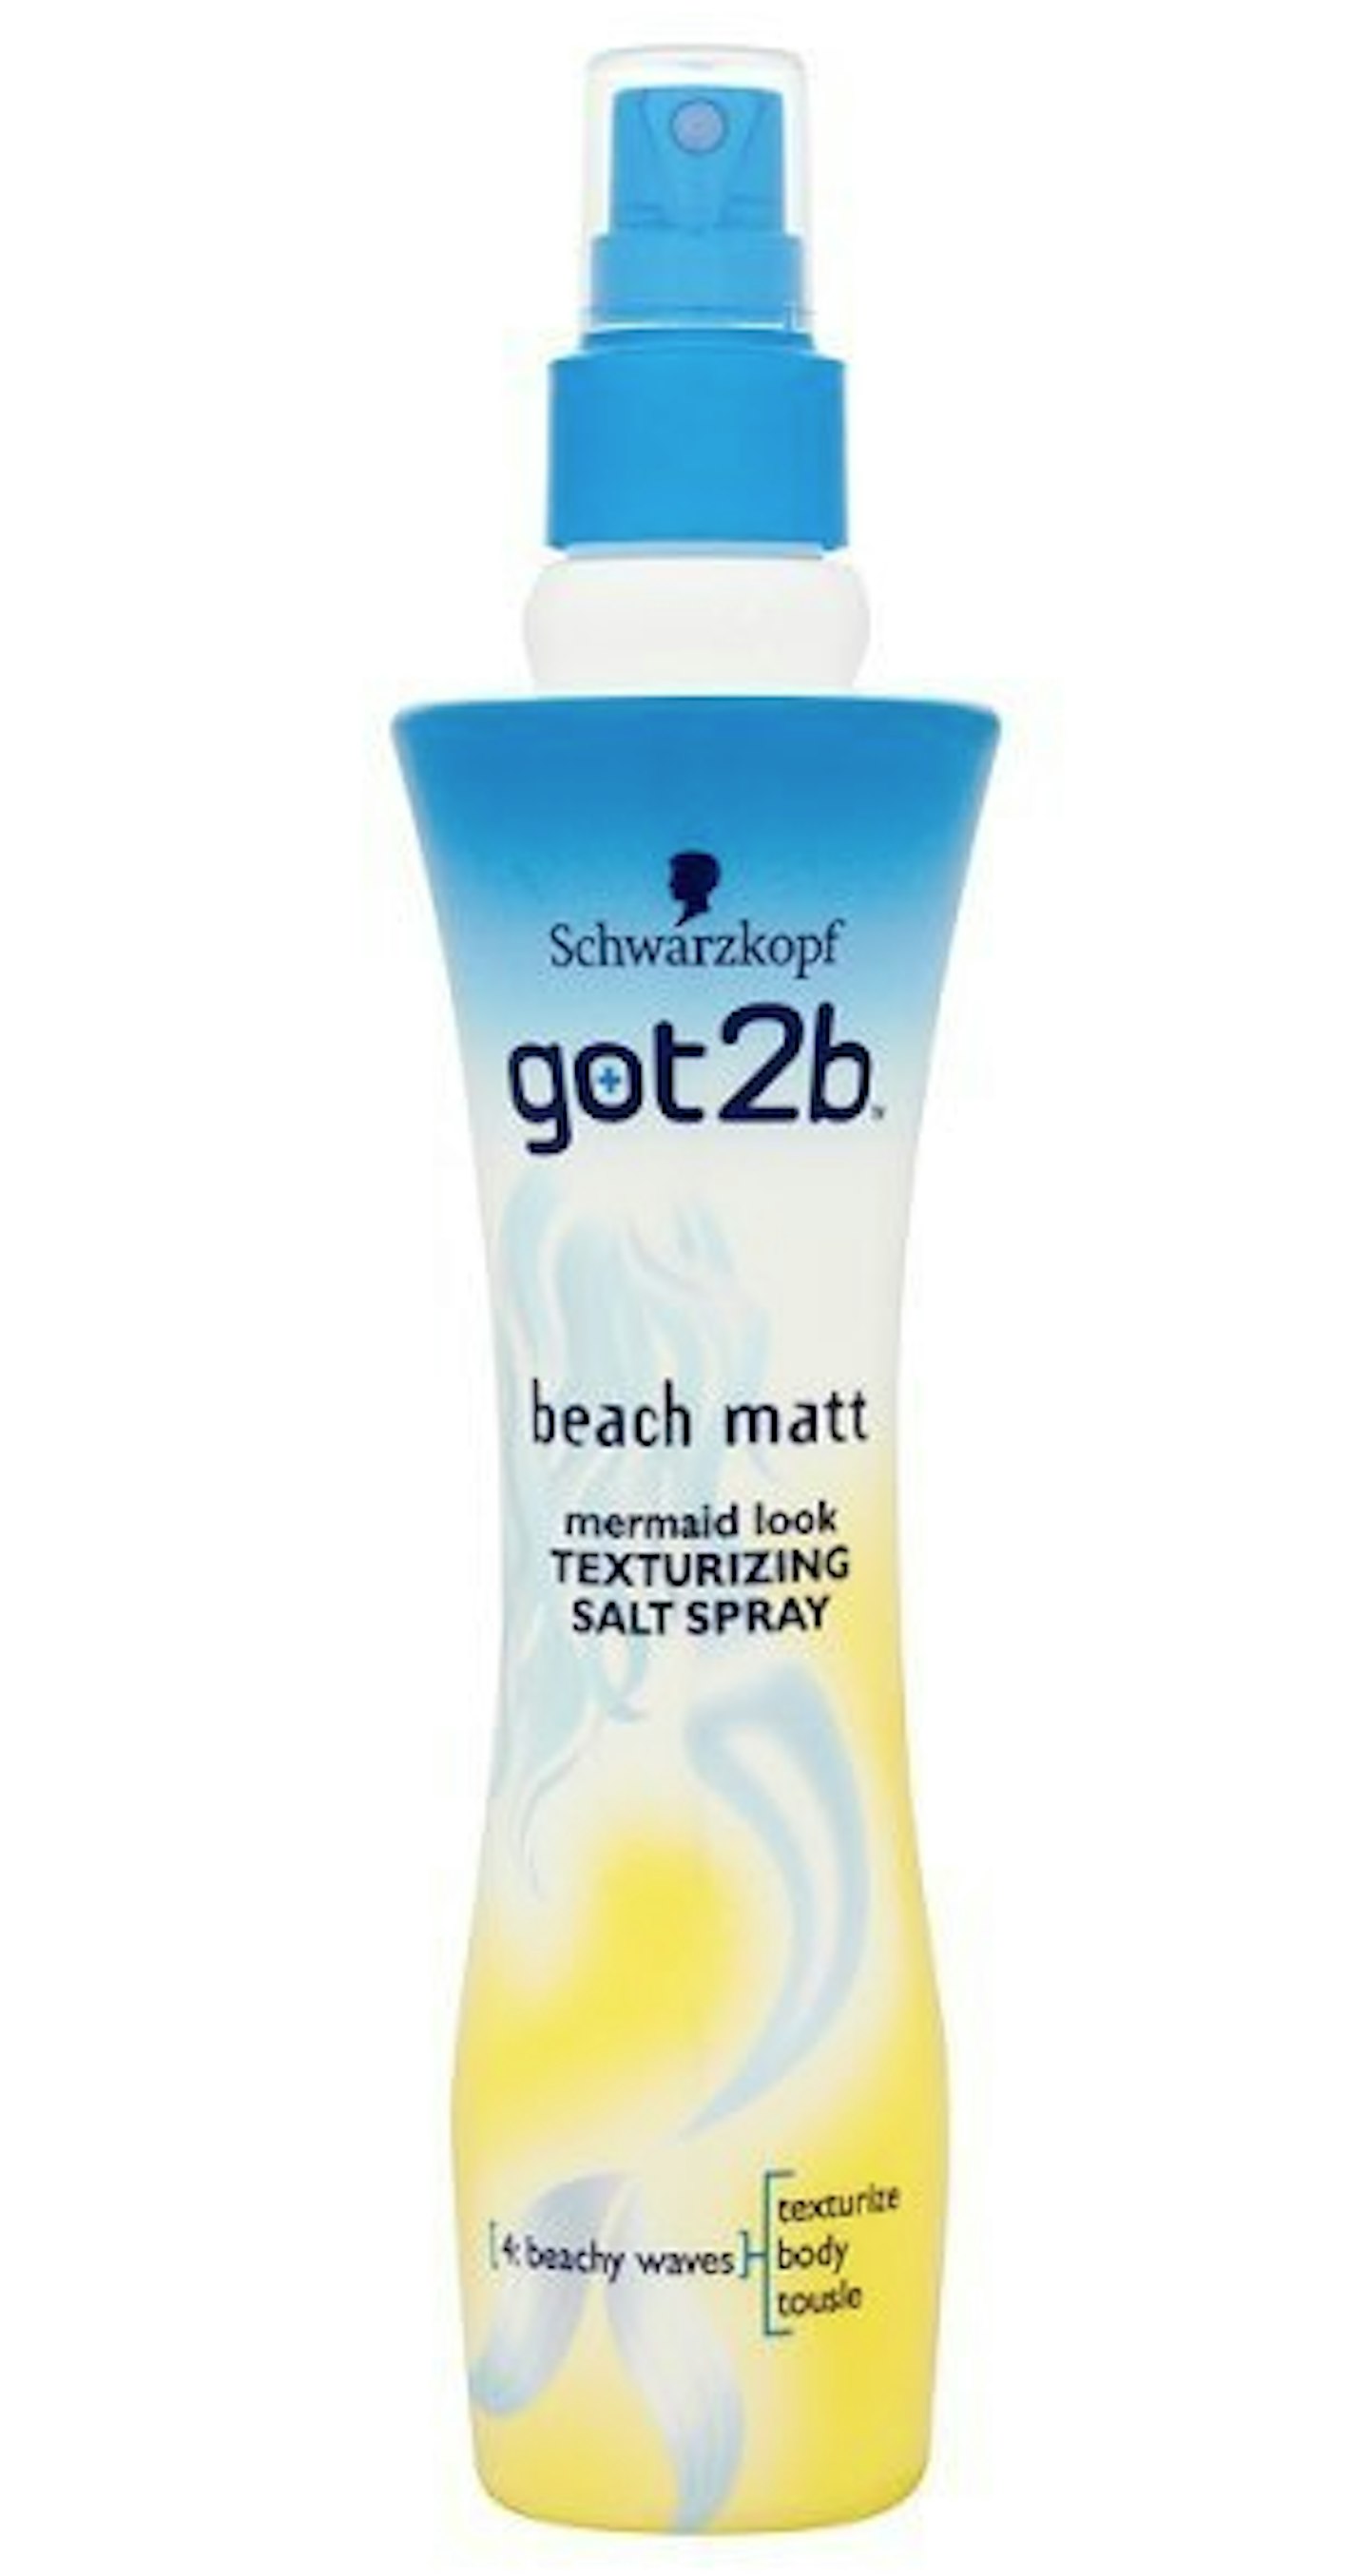 Schwarzkopf got2b Beach Matt Texturizing Salt Spray £4.05